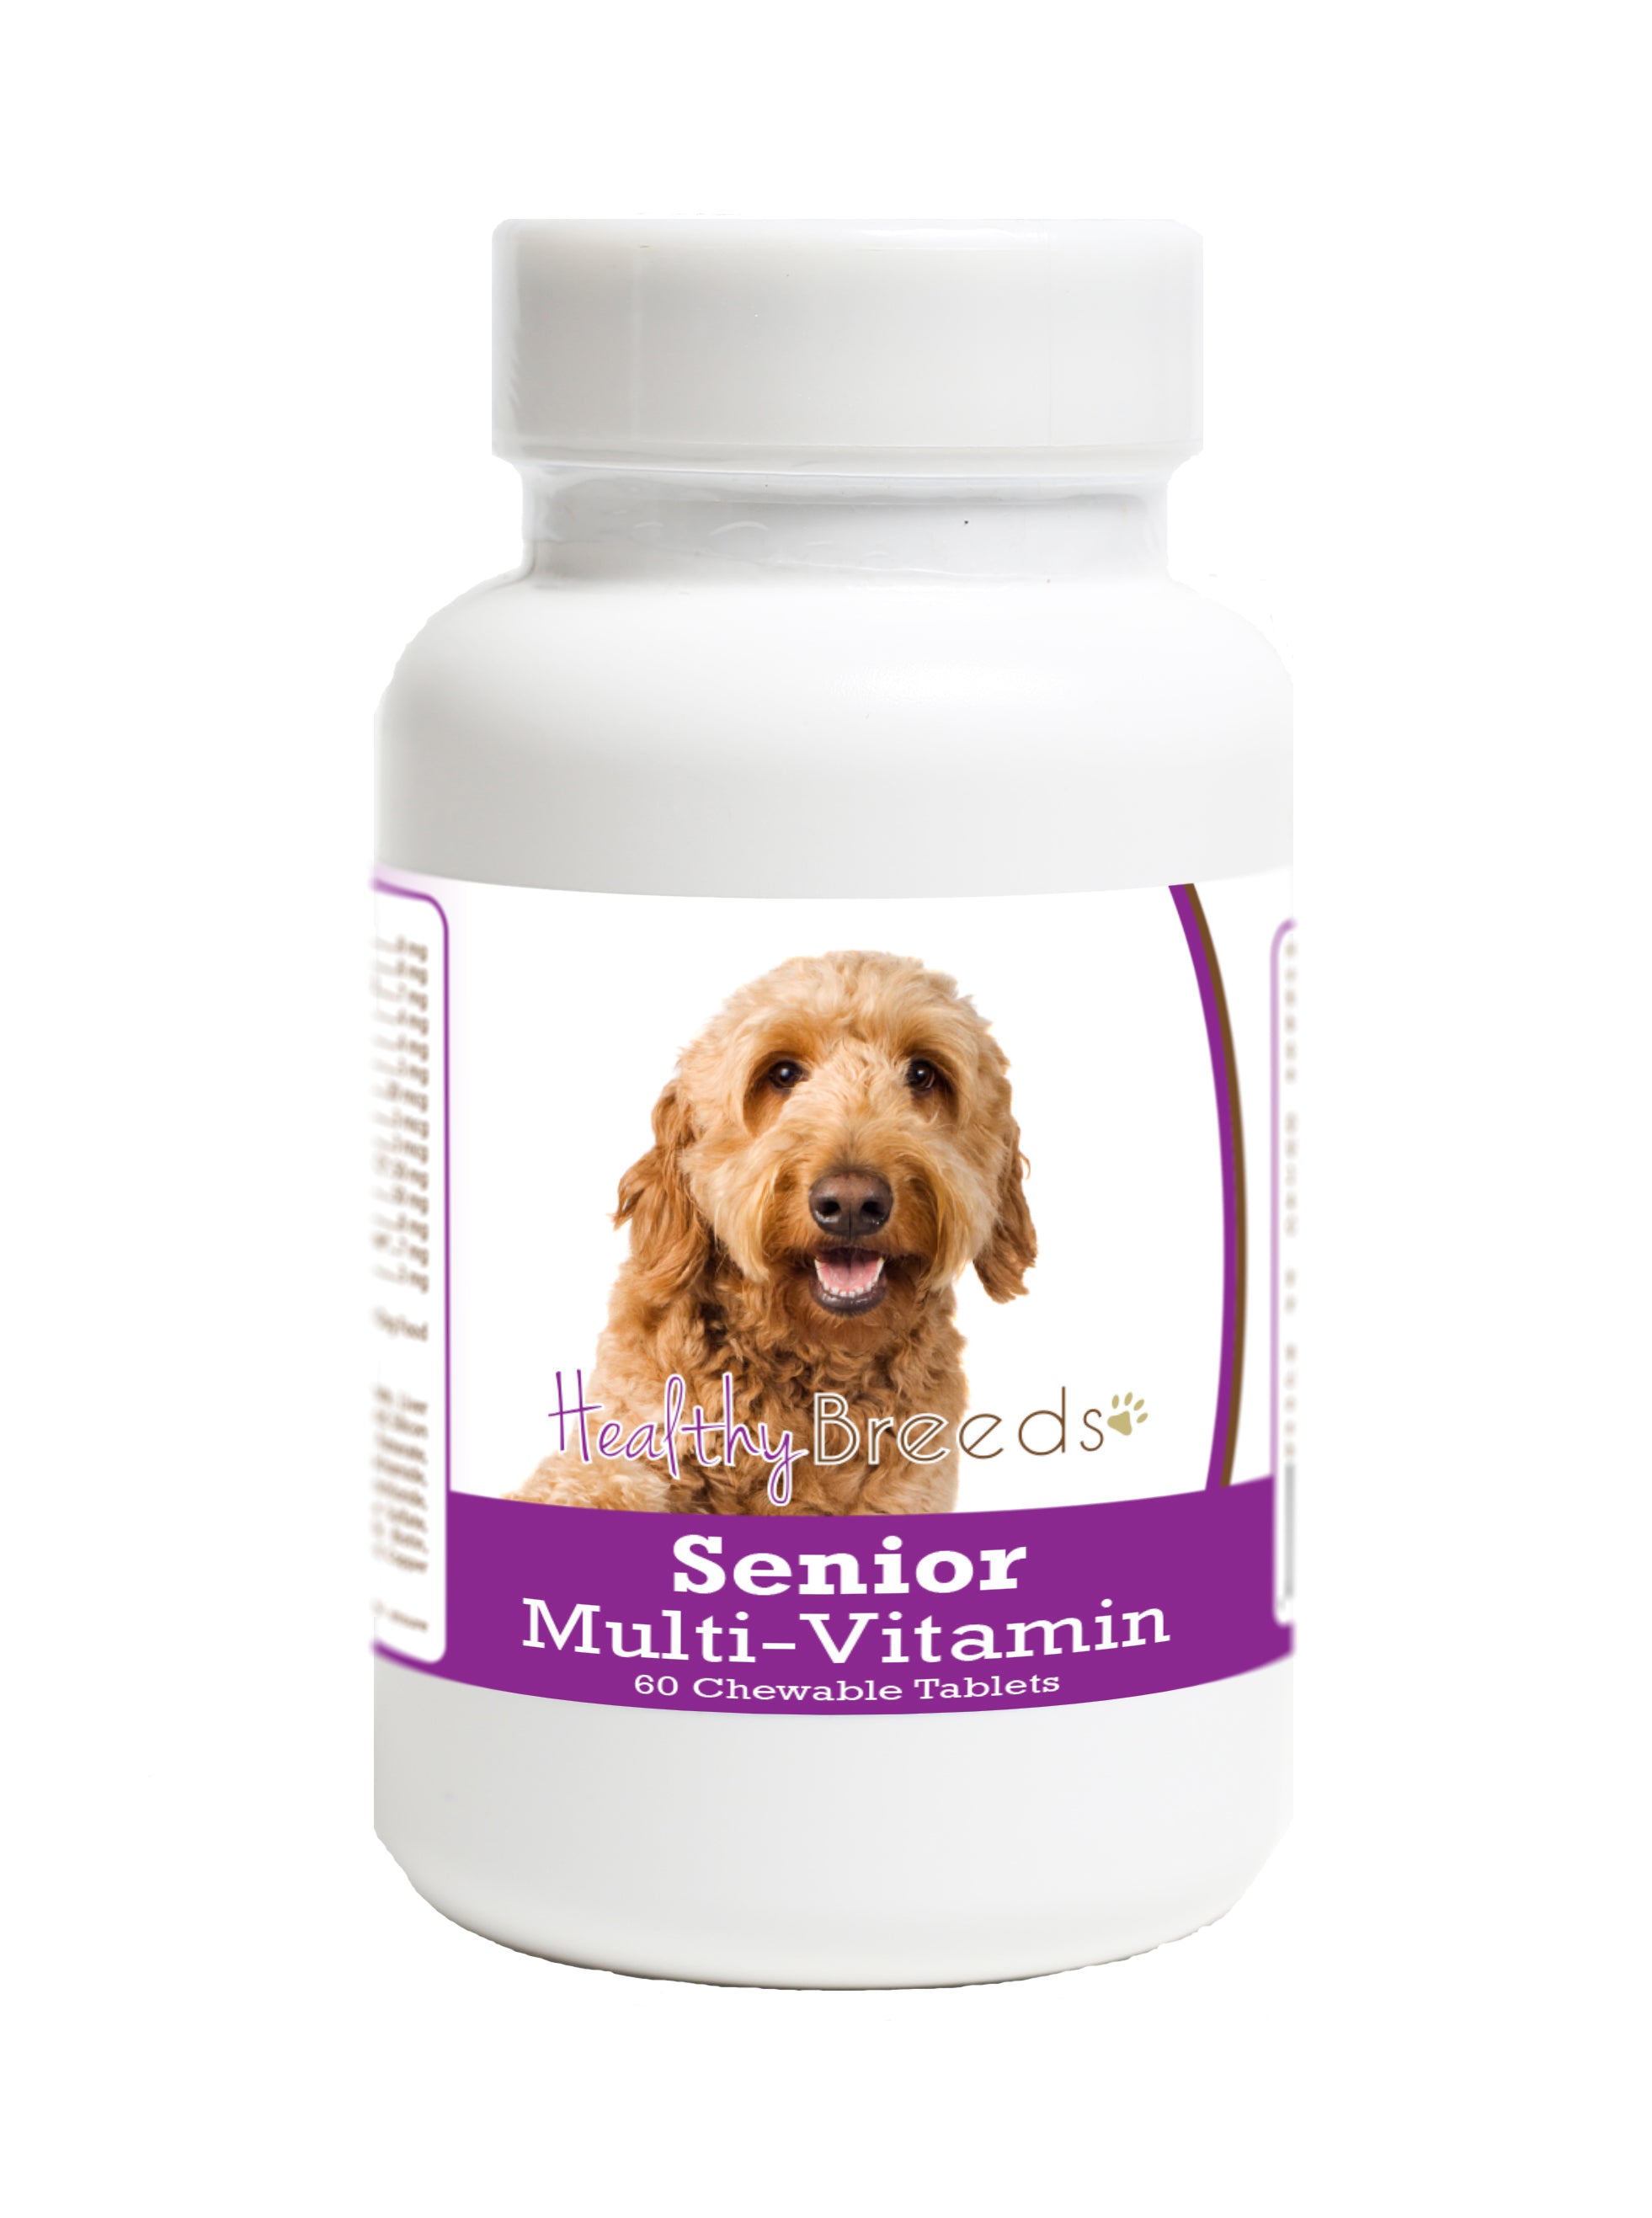 Goldendoodle Senior Dog Multivitamin Tablets 60 Count